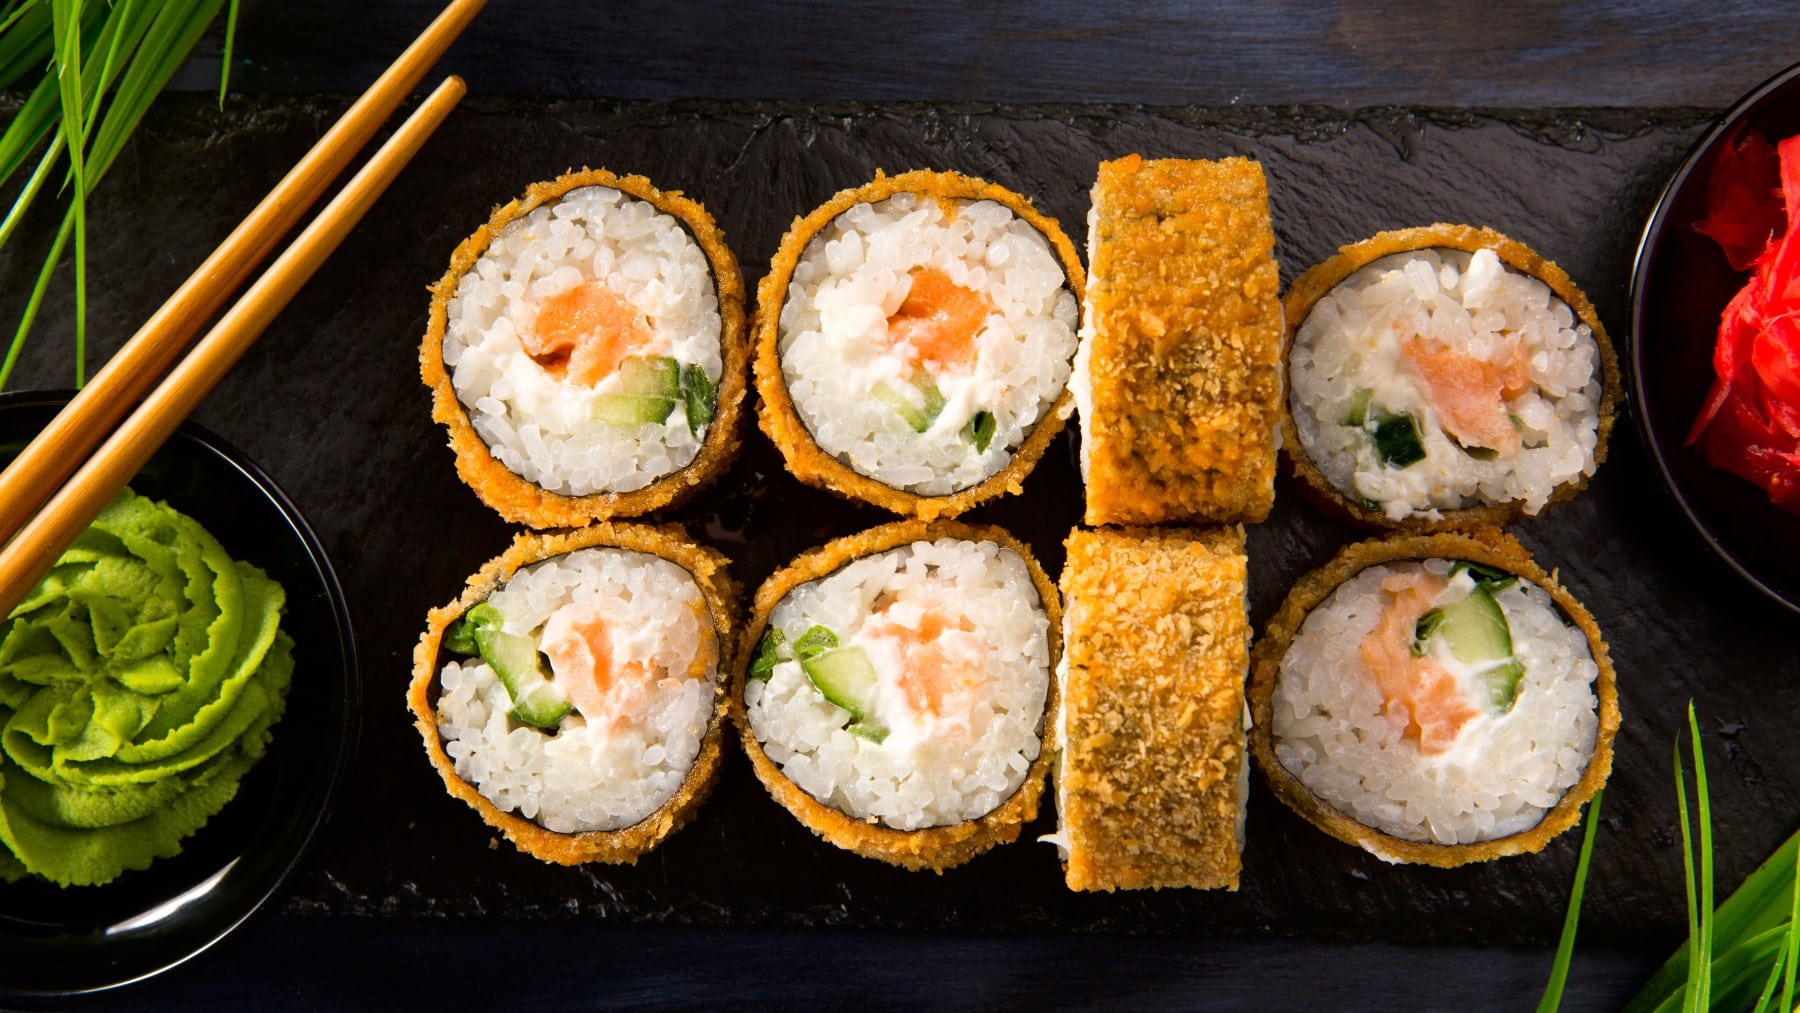 Acht Fried Sushi Röllchen vor dunklem Hintergrund neben Wasabi und Stäbchen.